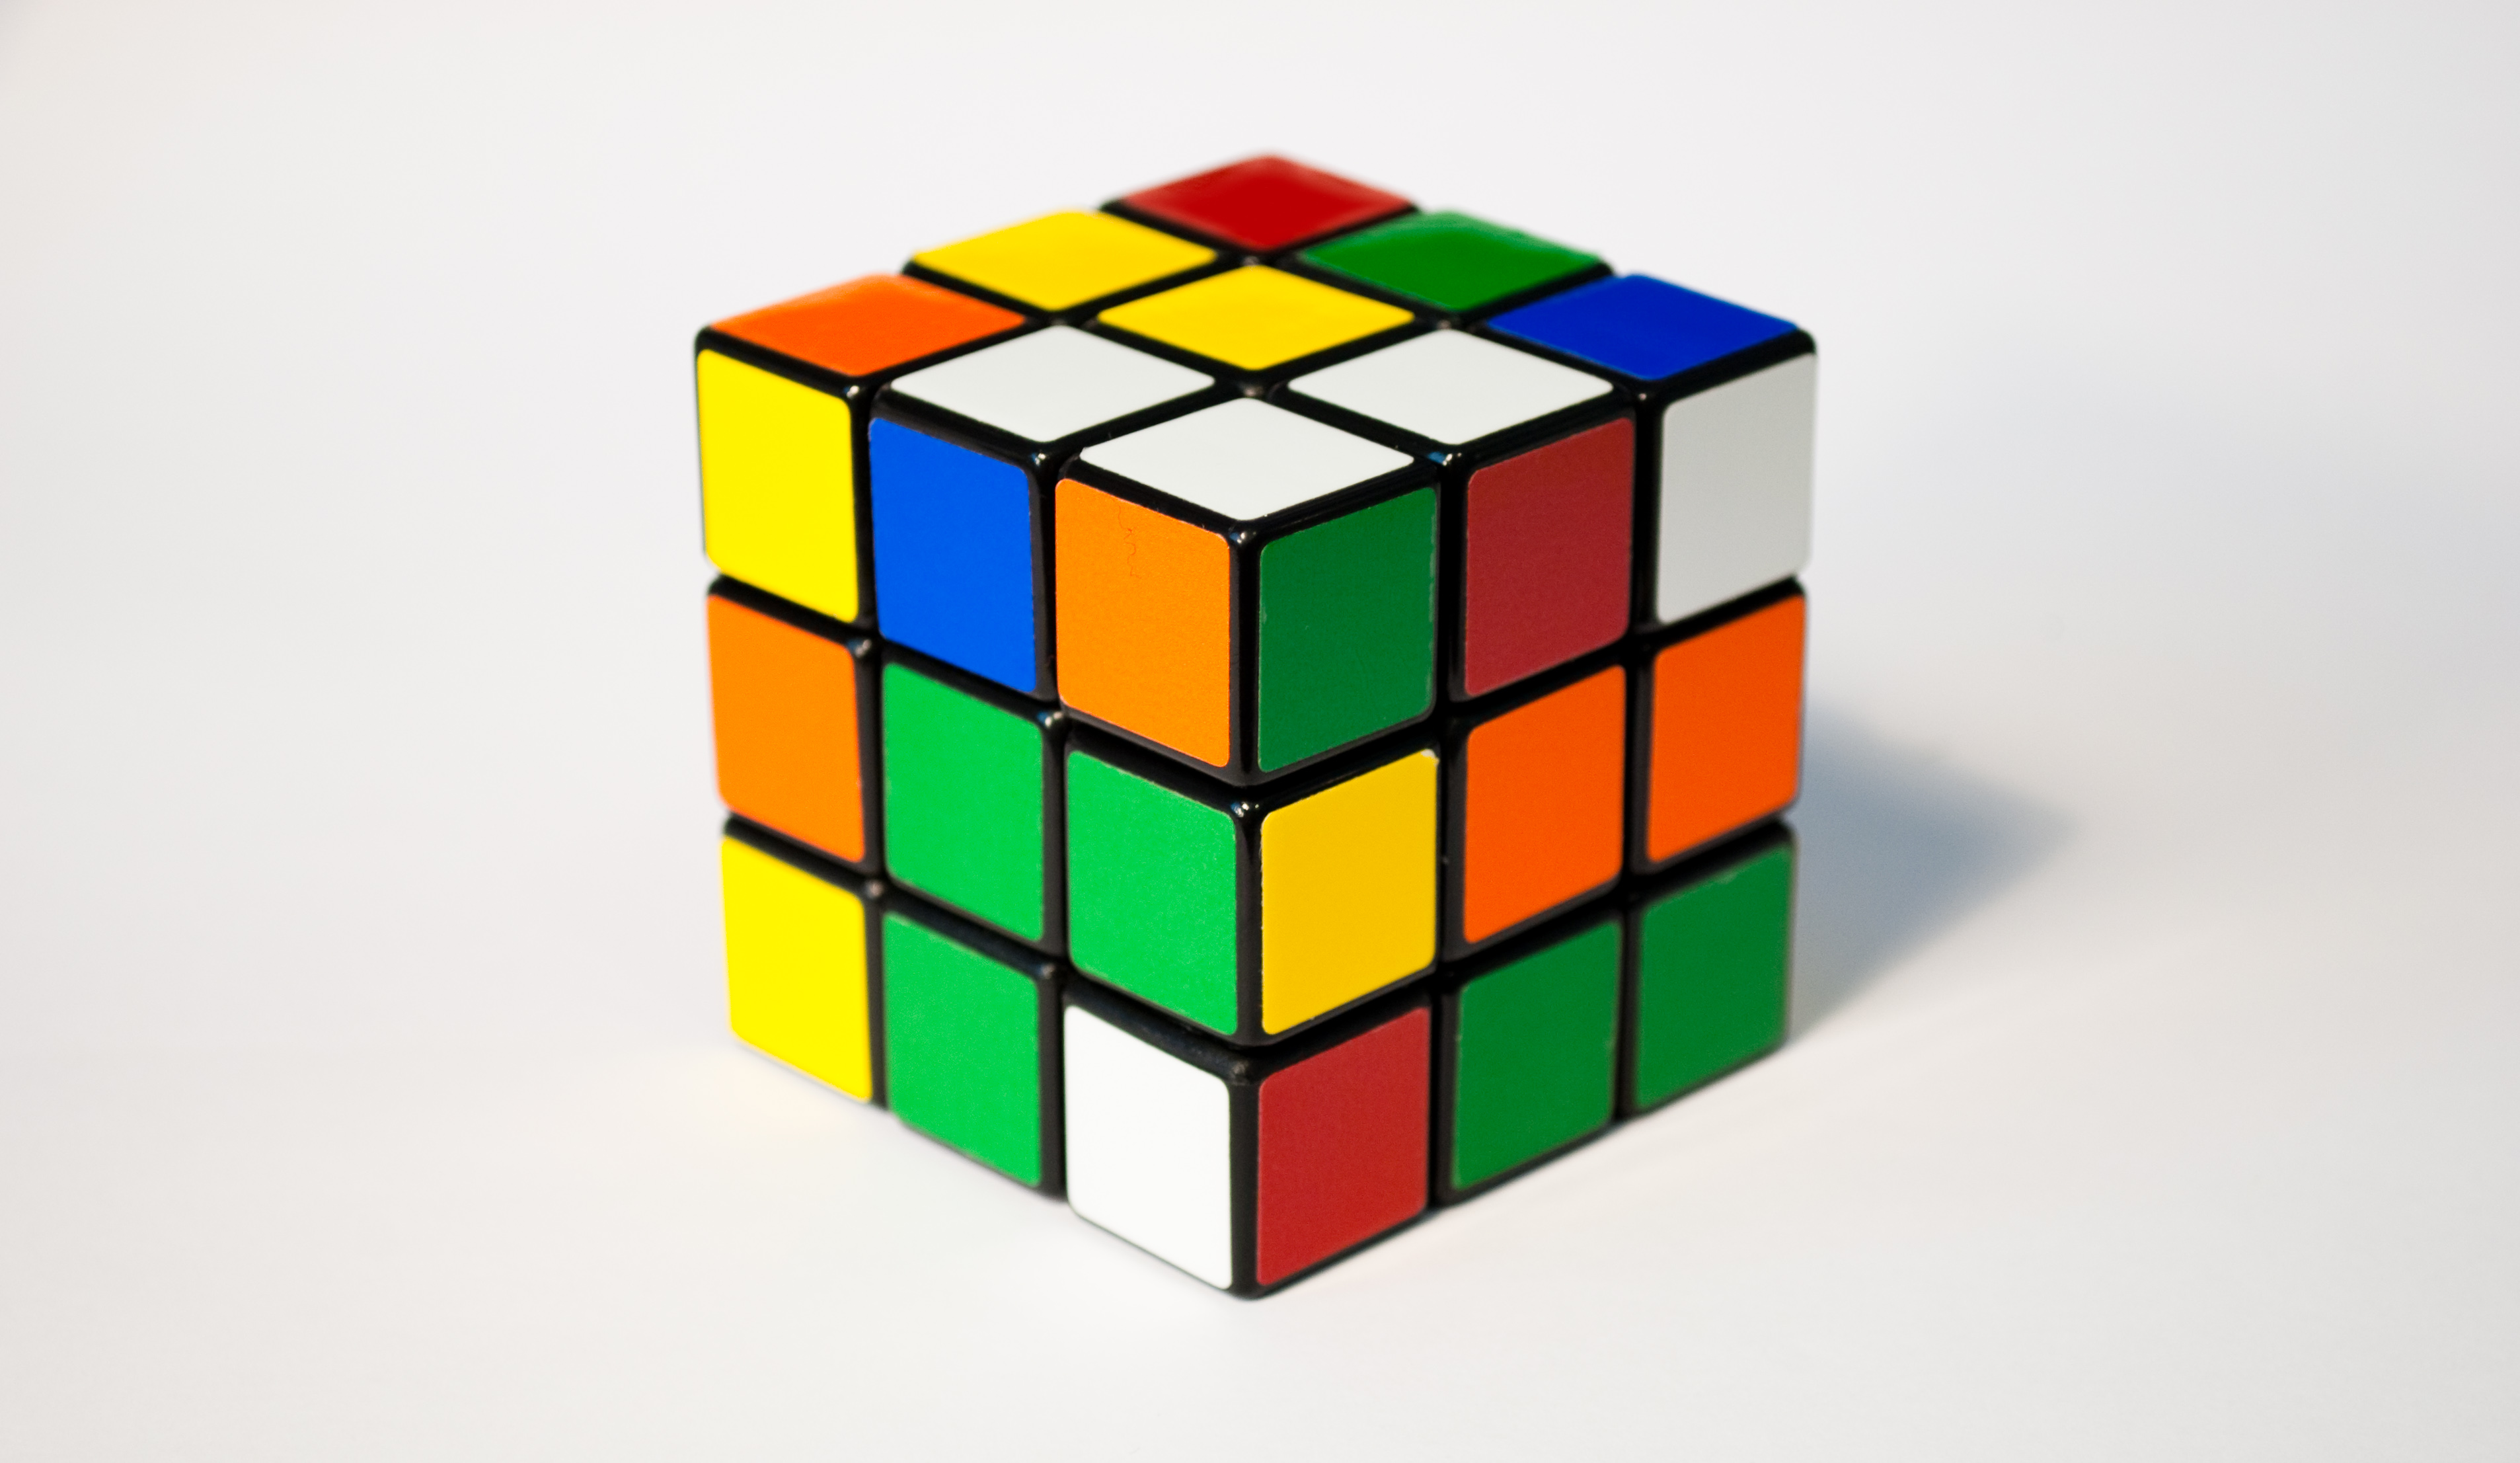 2. Hướng dẫn học thủ thuật Rubik 4x4